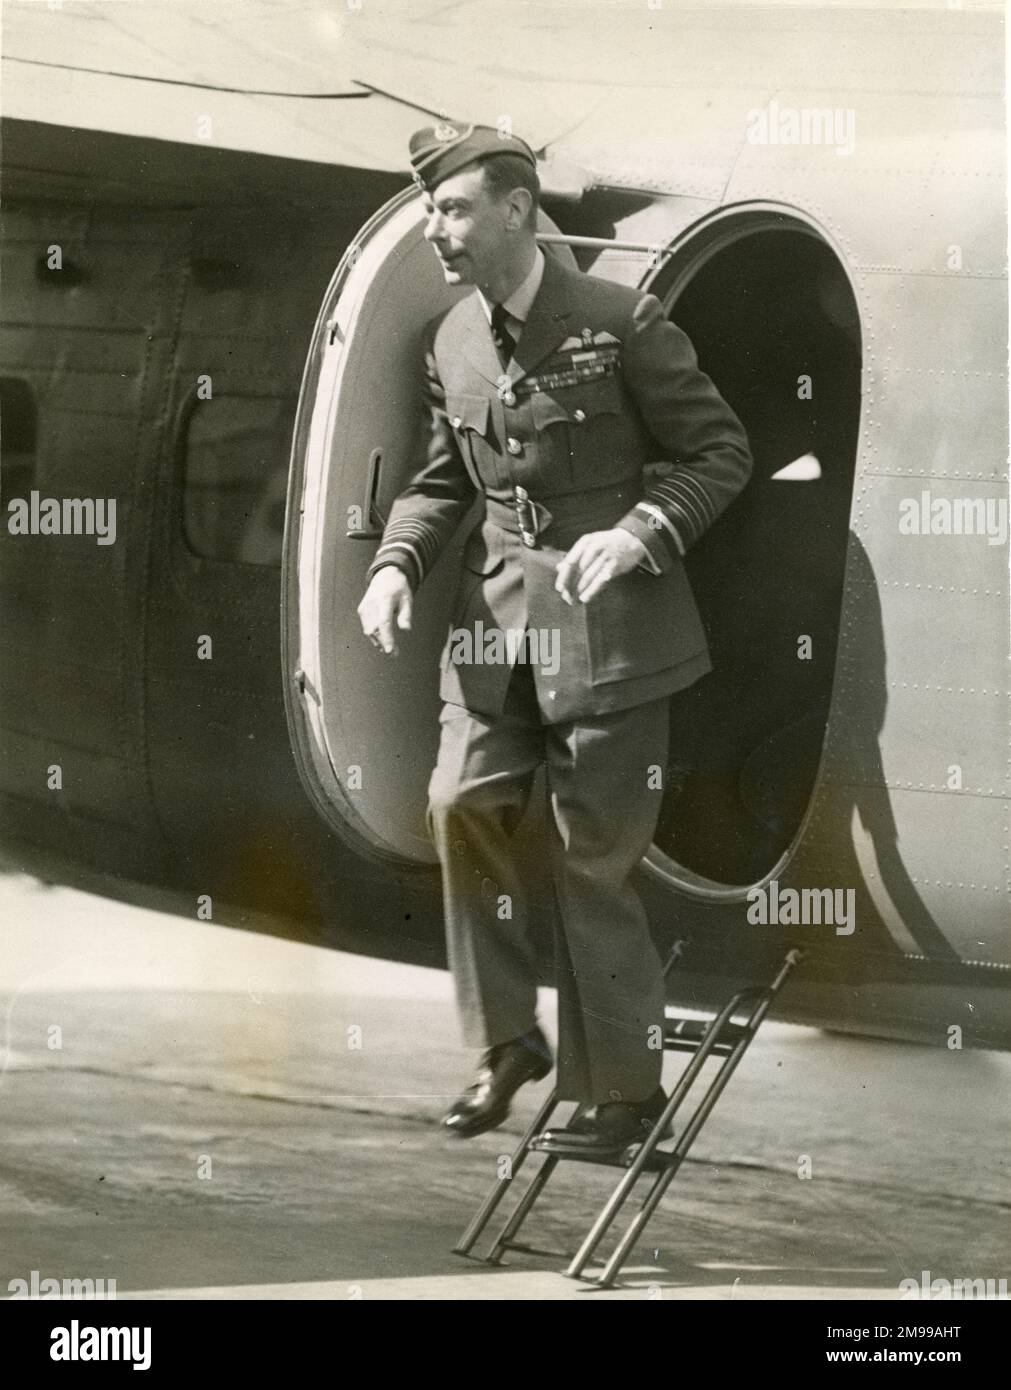 HM Rey Jorge VI (en uniforme de la RAF) deja un transporte de Havilland Flamingo durante una inspección de fábrica de aviones, el 15 de agosto de 1940. Foto de stock